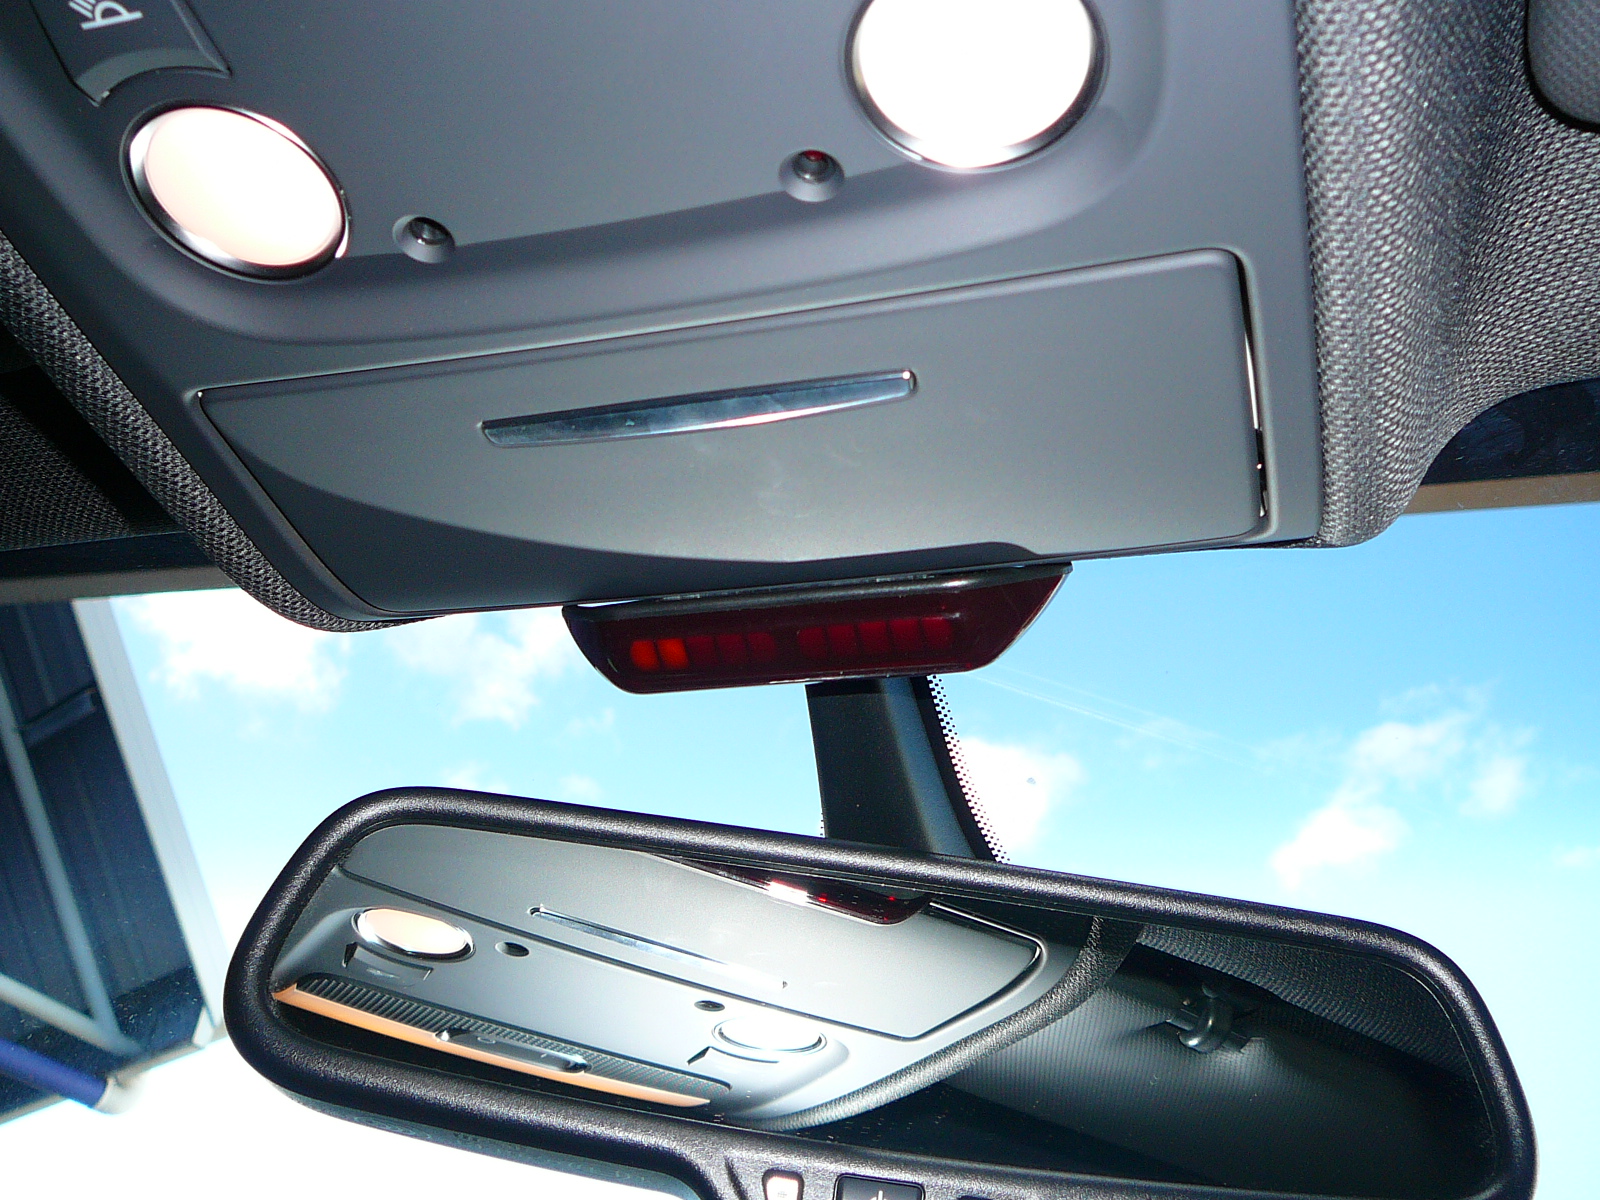 Audi A5 2011 Front Parking Sensors